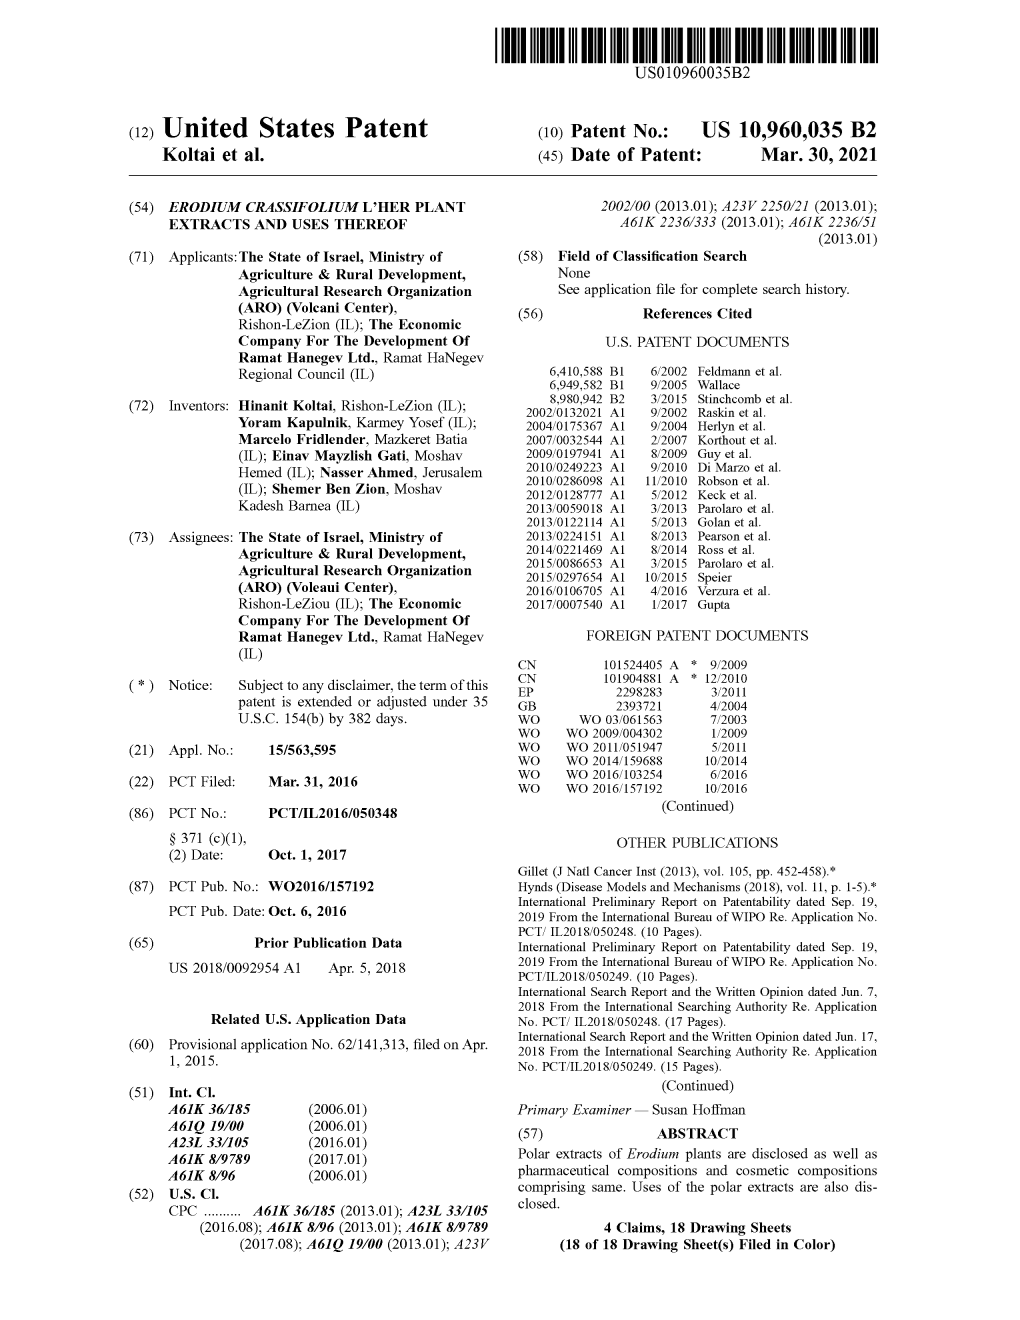 ( 12 ) United States Patent ( 10 ) Patent No .: US 10,960,035 B2 Koltai Et Al